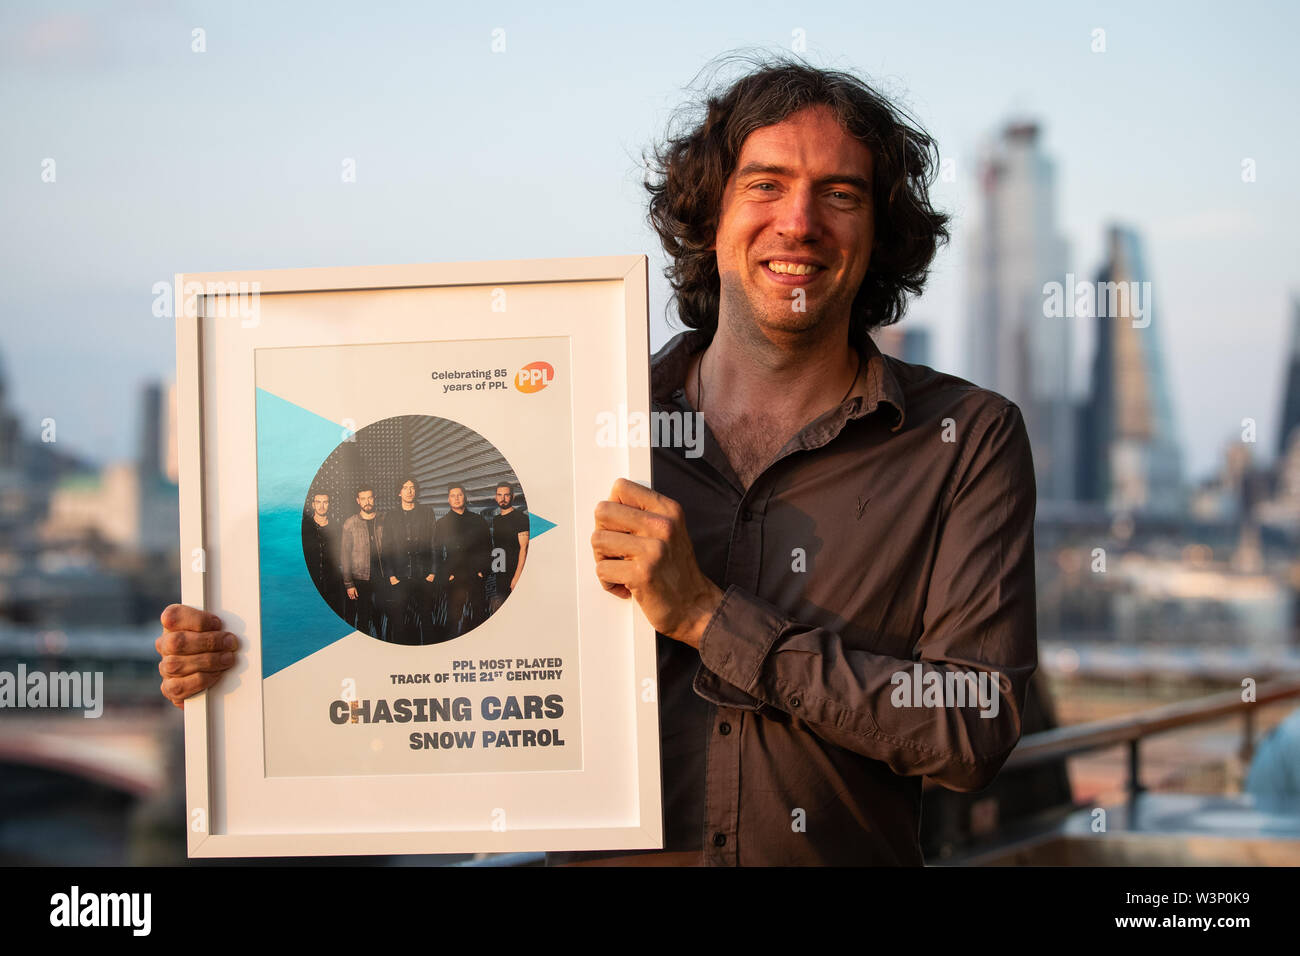 Frontmann von Snow Patrol Gary Lightbody erhält den Preis für die meisten gespielten Song des 21. Jahrhunderts nach music Licensing Company PPL für Aufzeichnung seiner Band, Chasing Cars, bei der Oxo Tower, London. Stockfoto